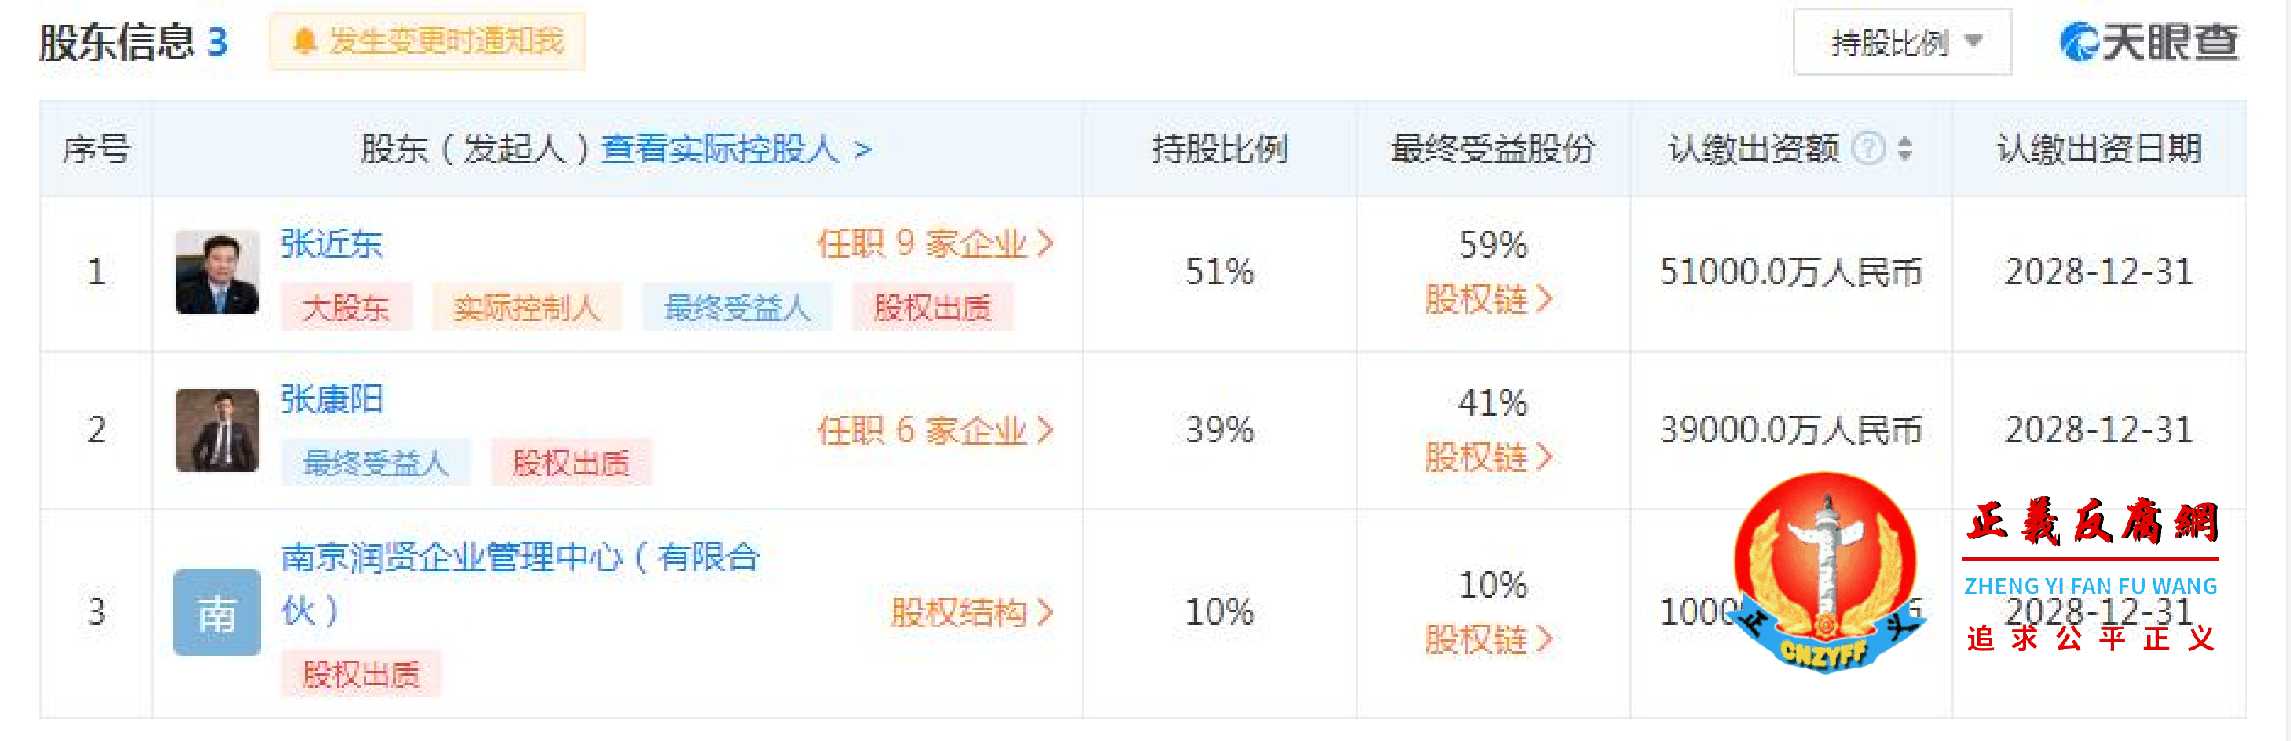 苏宁控股集团有限公司3个股东信息.jpg